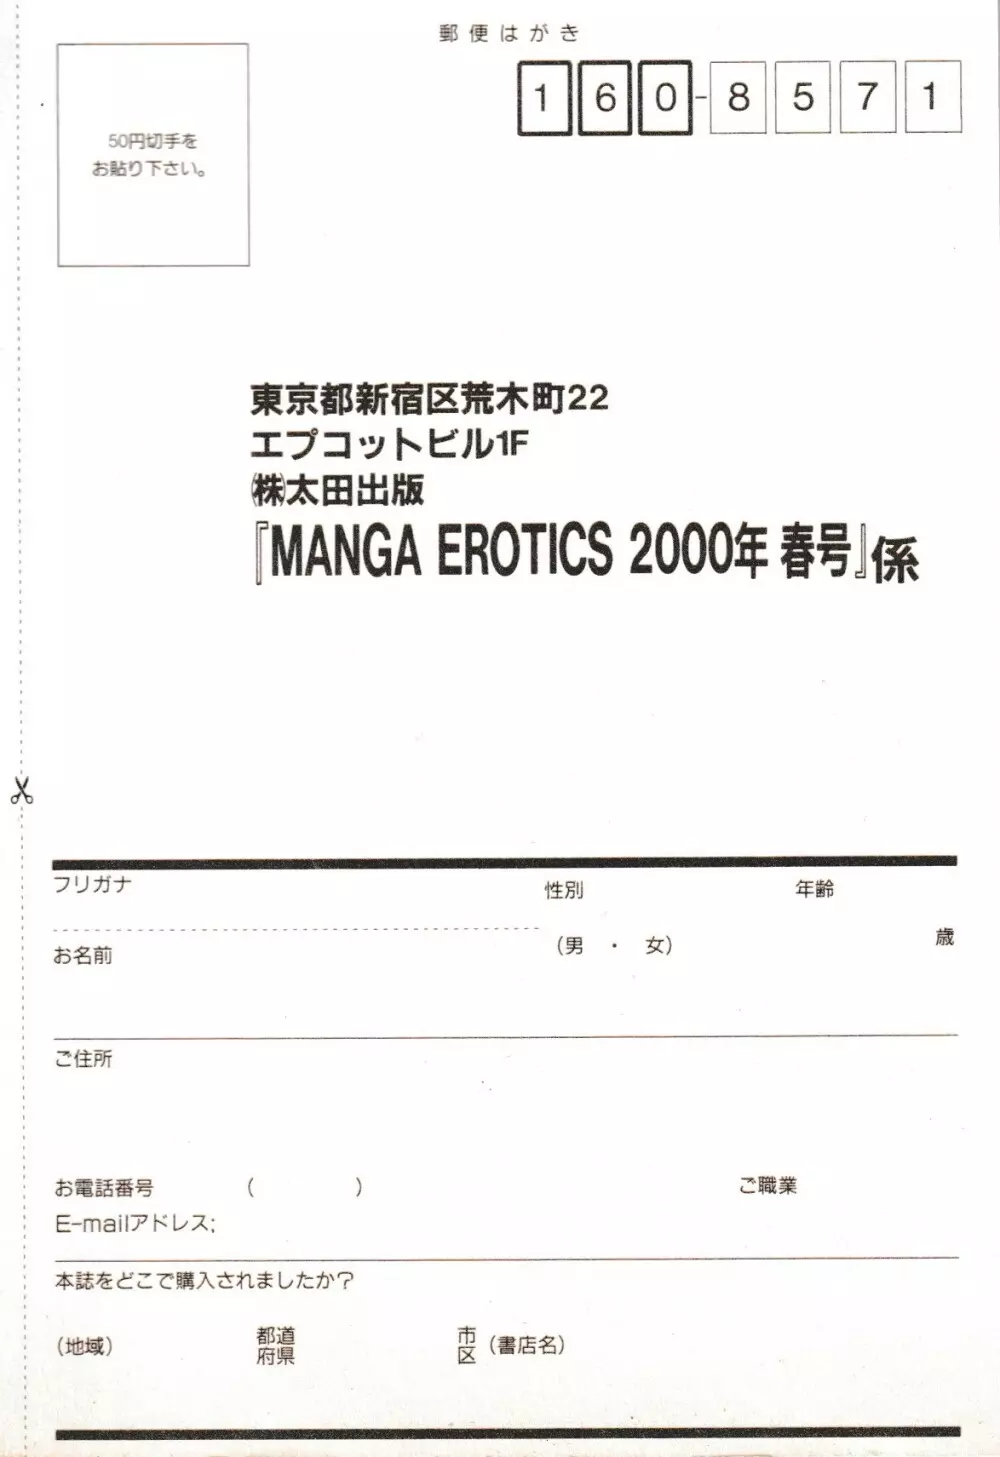 Erotics 2000 295ページ